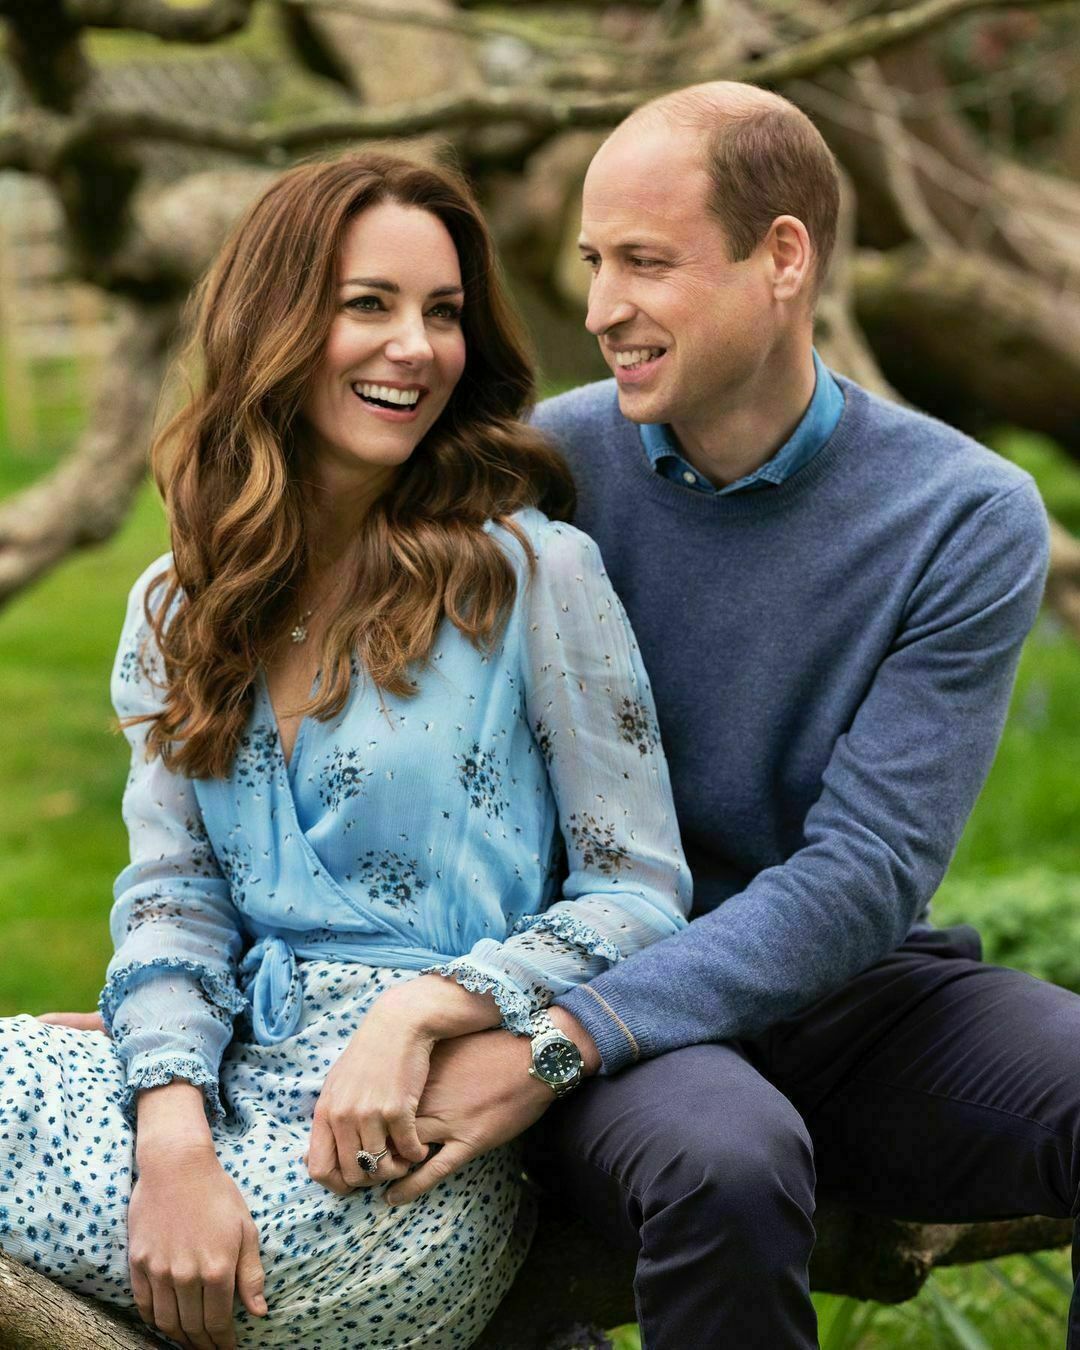 Πρίγκιπας William - Kate Middleton: Η φωτογραφία-μήνυμα προς τον Harry ότι παραμένουν ιδιαίτερα δημοφιλείς και δυνατοί